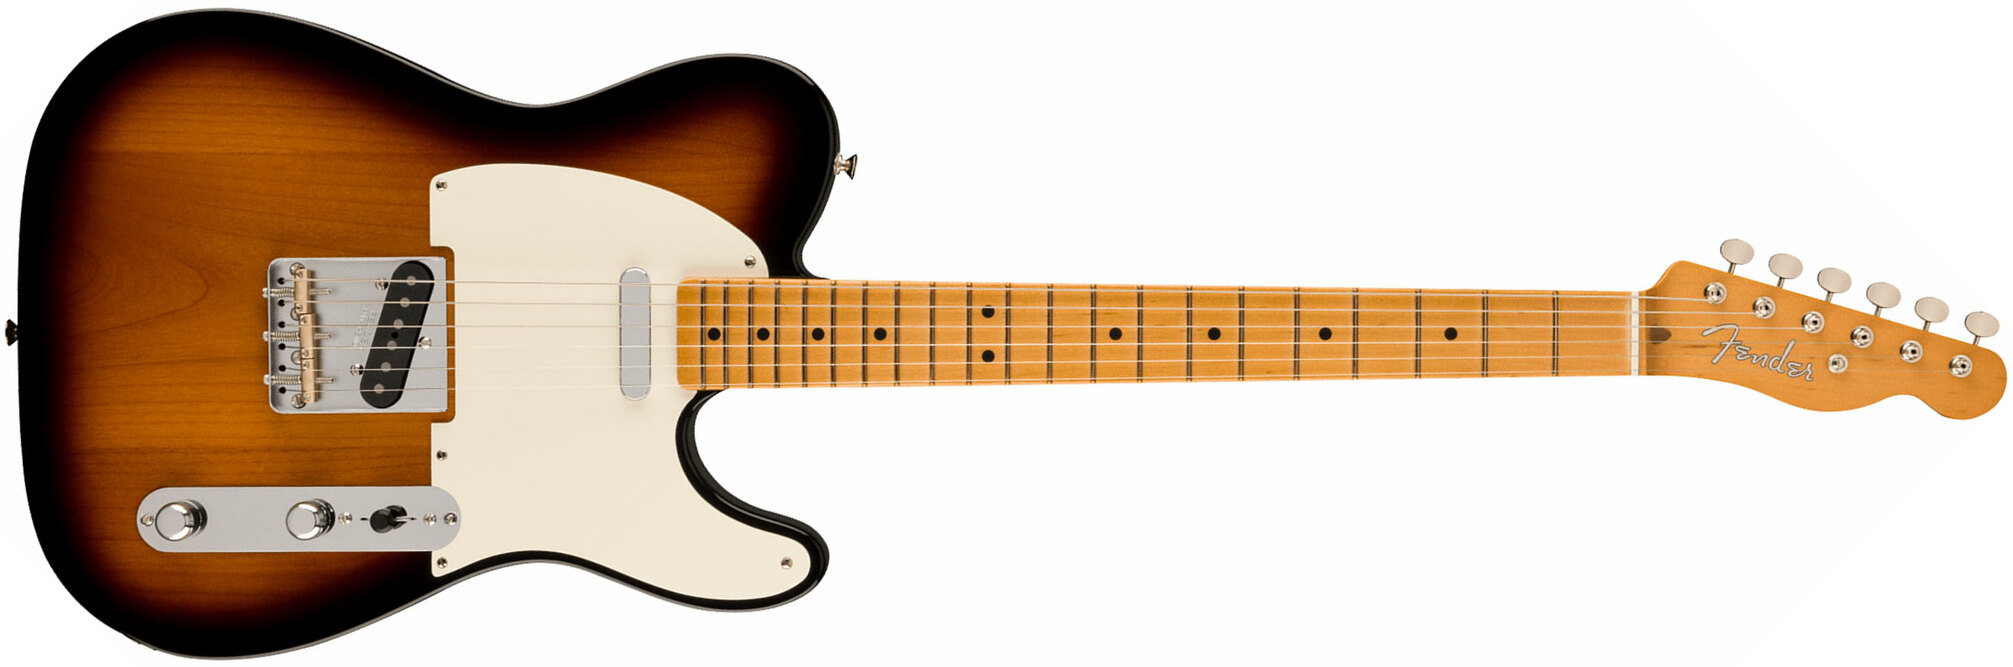 Fender Tele Nocaster 50s Vintera 2 Mex 2s Ht Mn - 2-color Sunburst - Guitarra eléctrica con forma de tel - Main picture